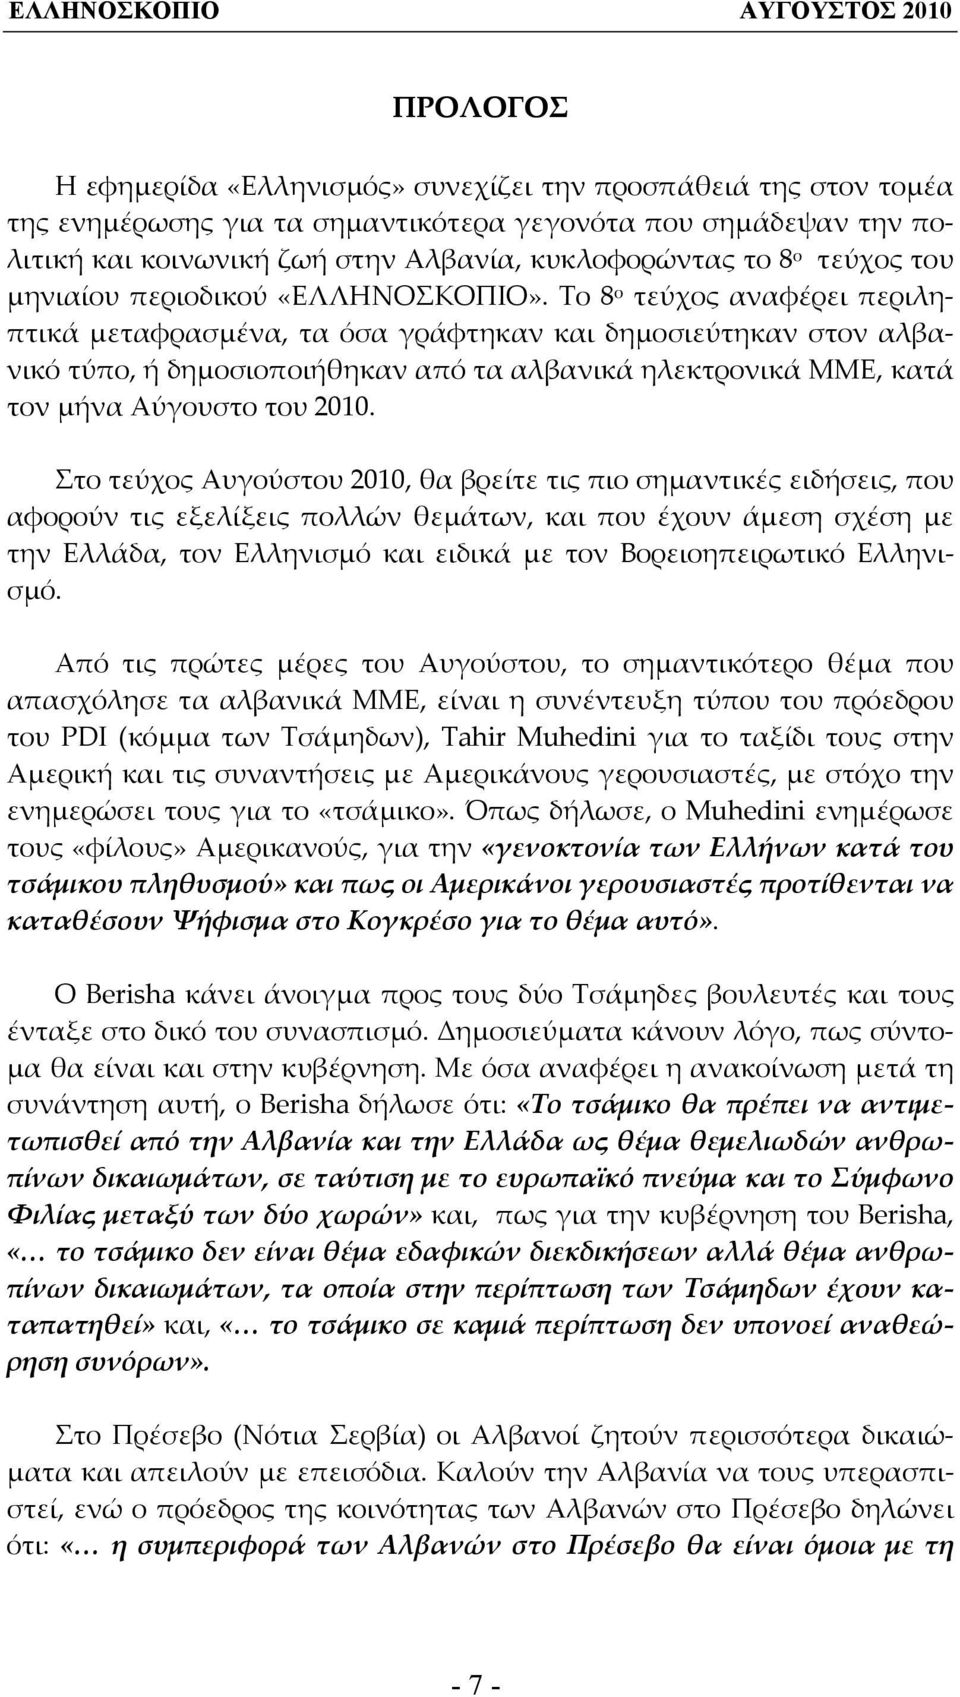 Το 8 ο τεύχος αναφέρει περιληπτικά μεταφρασμένα, τα όσα γράφτηκαν και δημοσιεύτηκαν στον αλβανικό τύπο, ή δημοσιοποιήθηκαν από τα αλβανικά ηλεκτρονικά ΜΜΕ, κατά τον μήνα Αύγουστο του 2010.